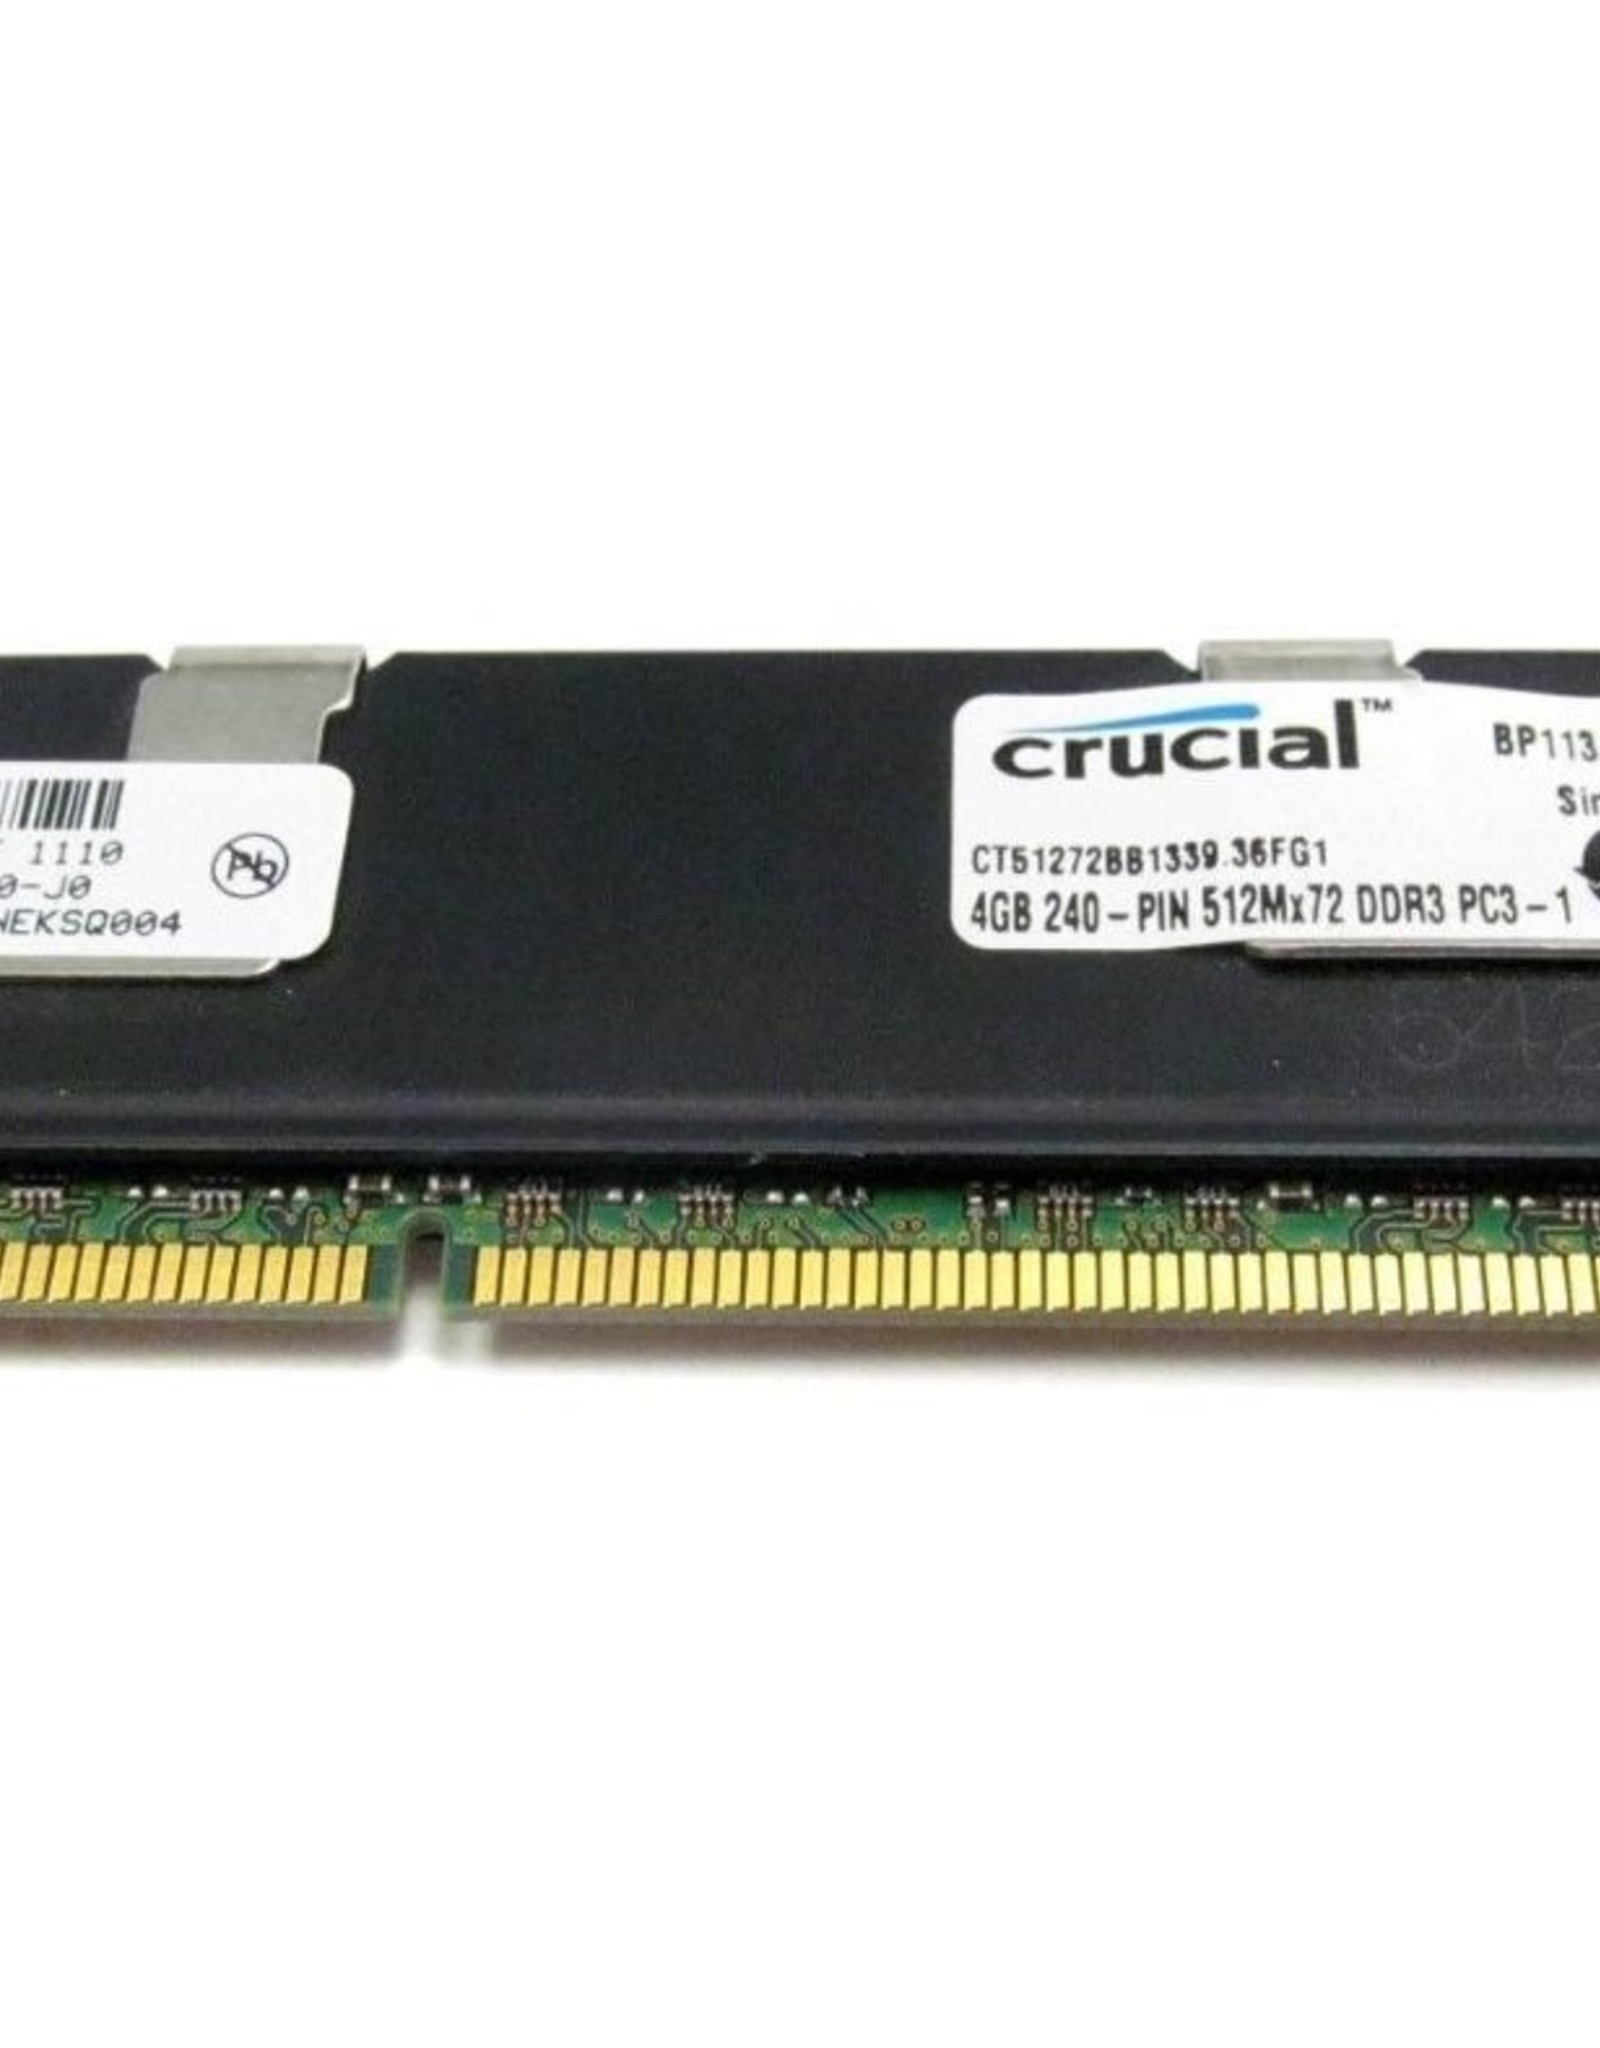 4 GB RAM PC3-10600R DDR3 ECC Memory - LoremIpsum